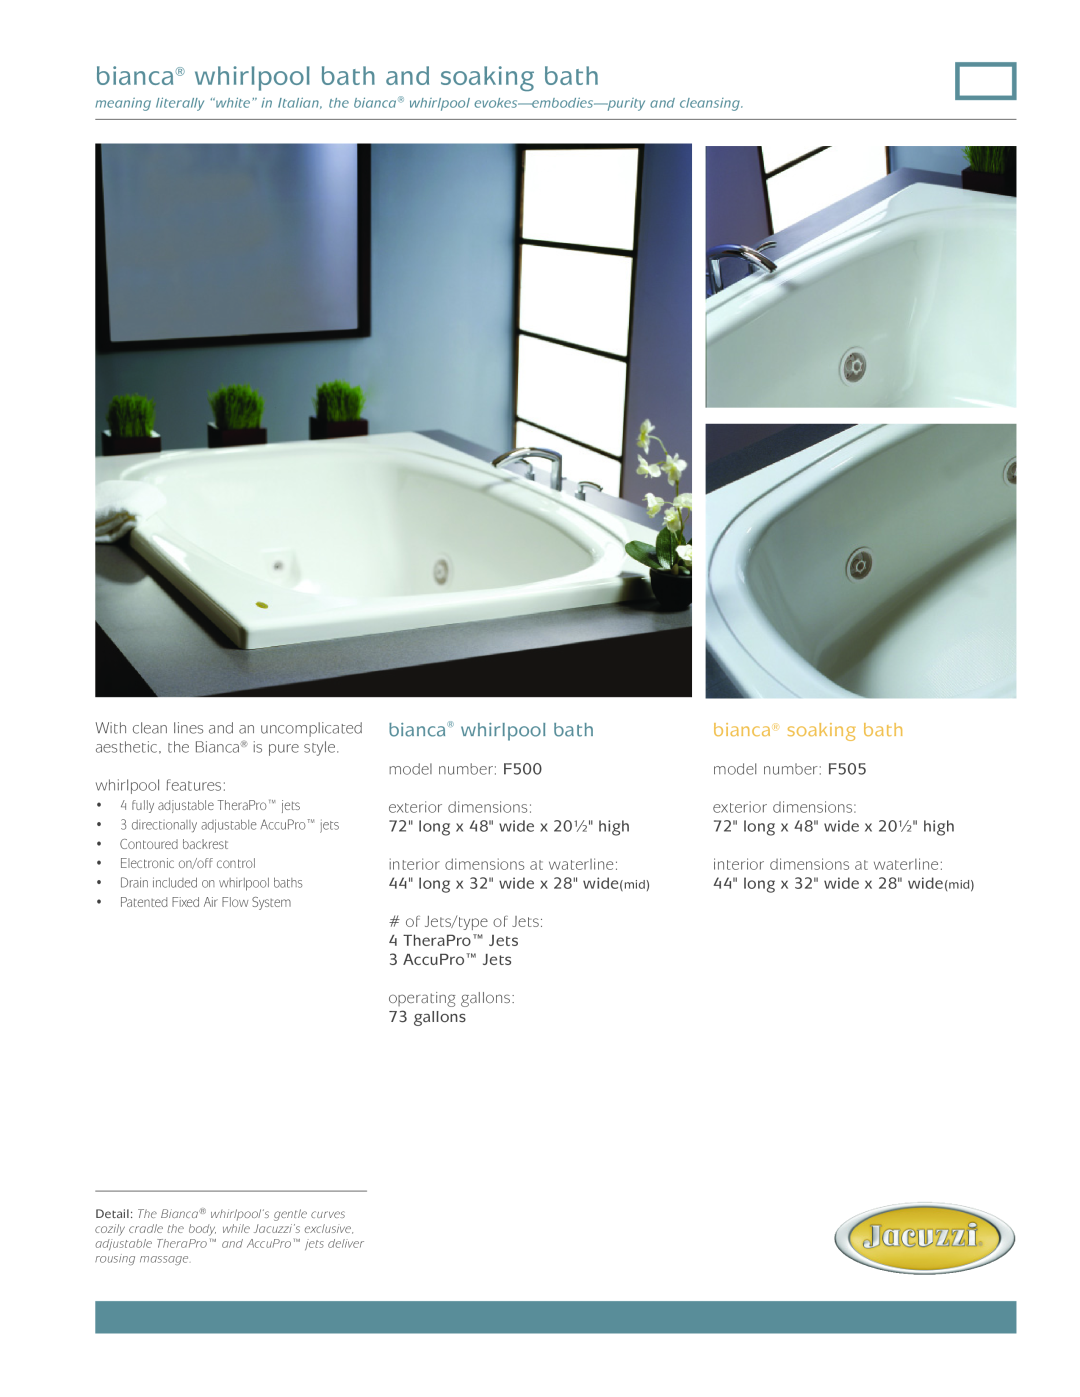 Jacuzzi F505, F500 dimensions bianca whirlpool bath and soaking bath, bianca soaking bath 